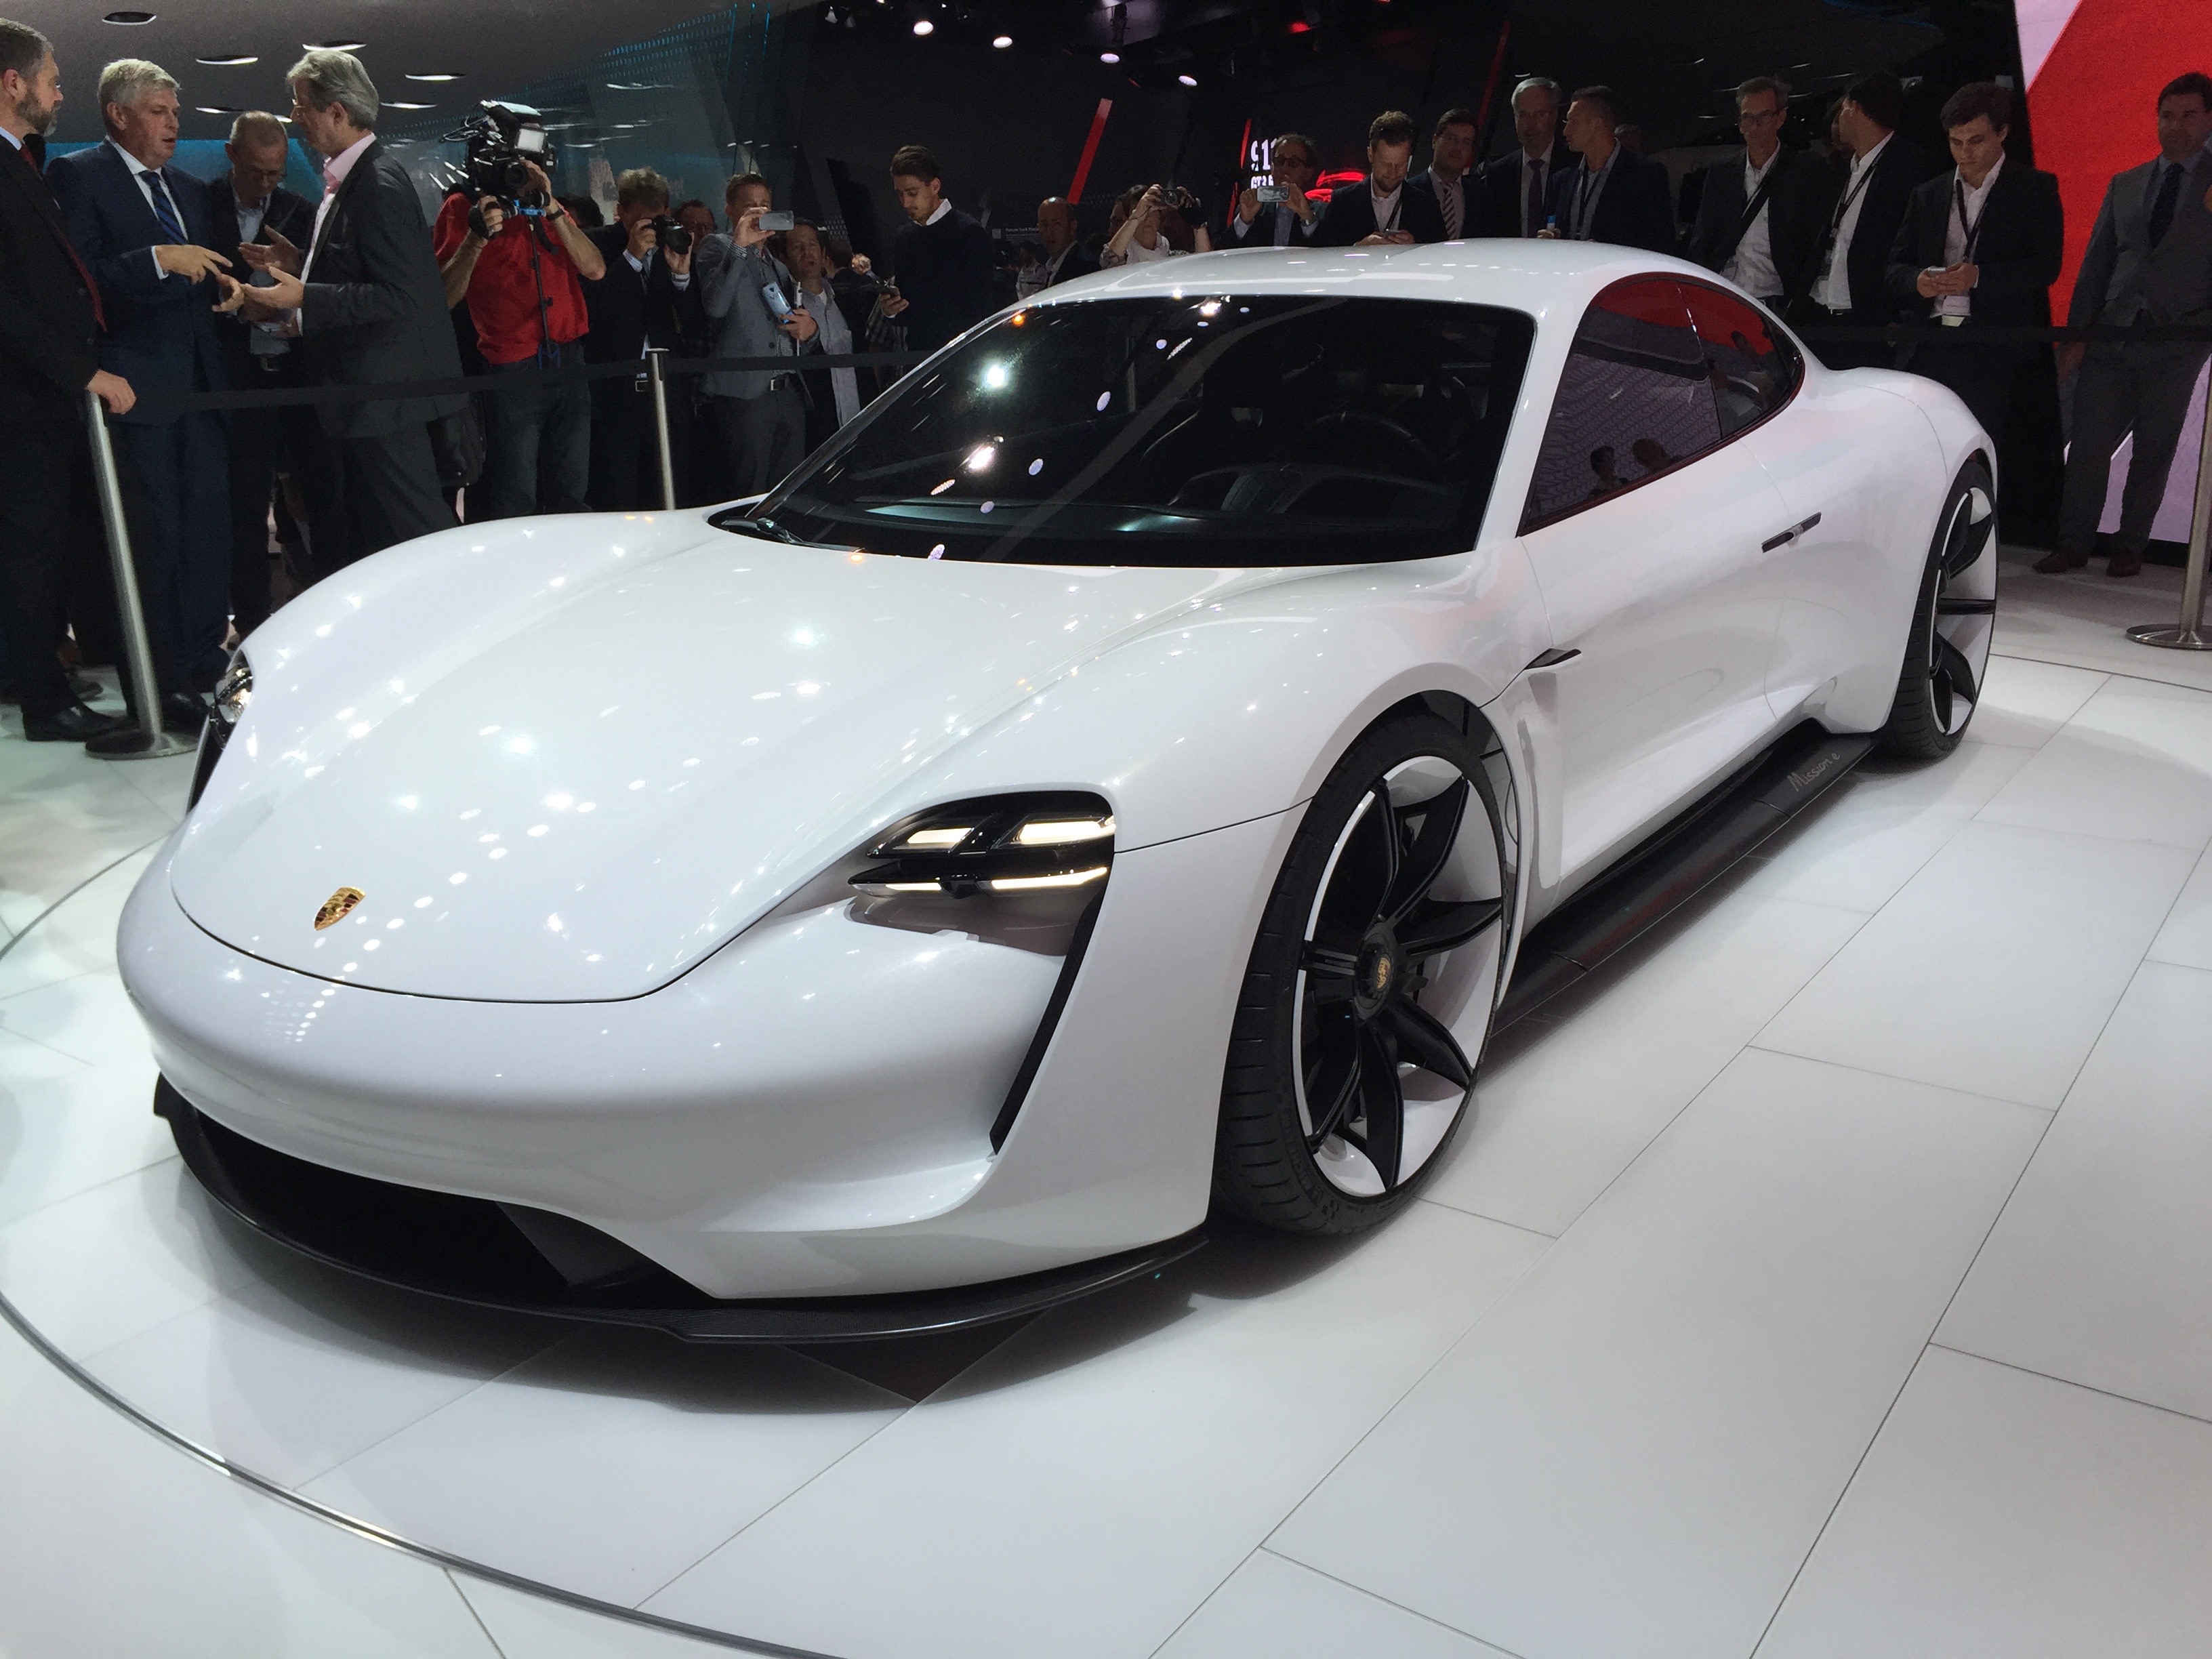 Porsche Mission E Electric Sedan Concept 310 Mile Range 15 Minute Charging